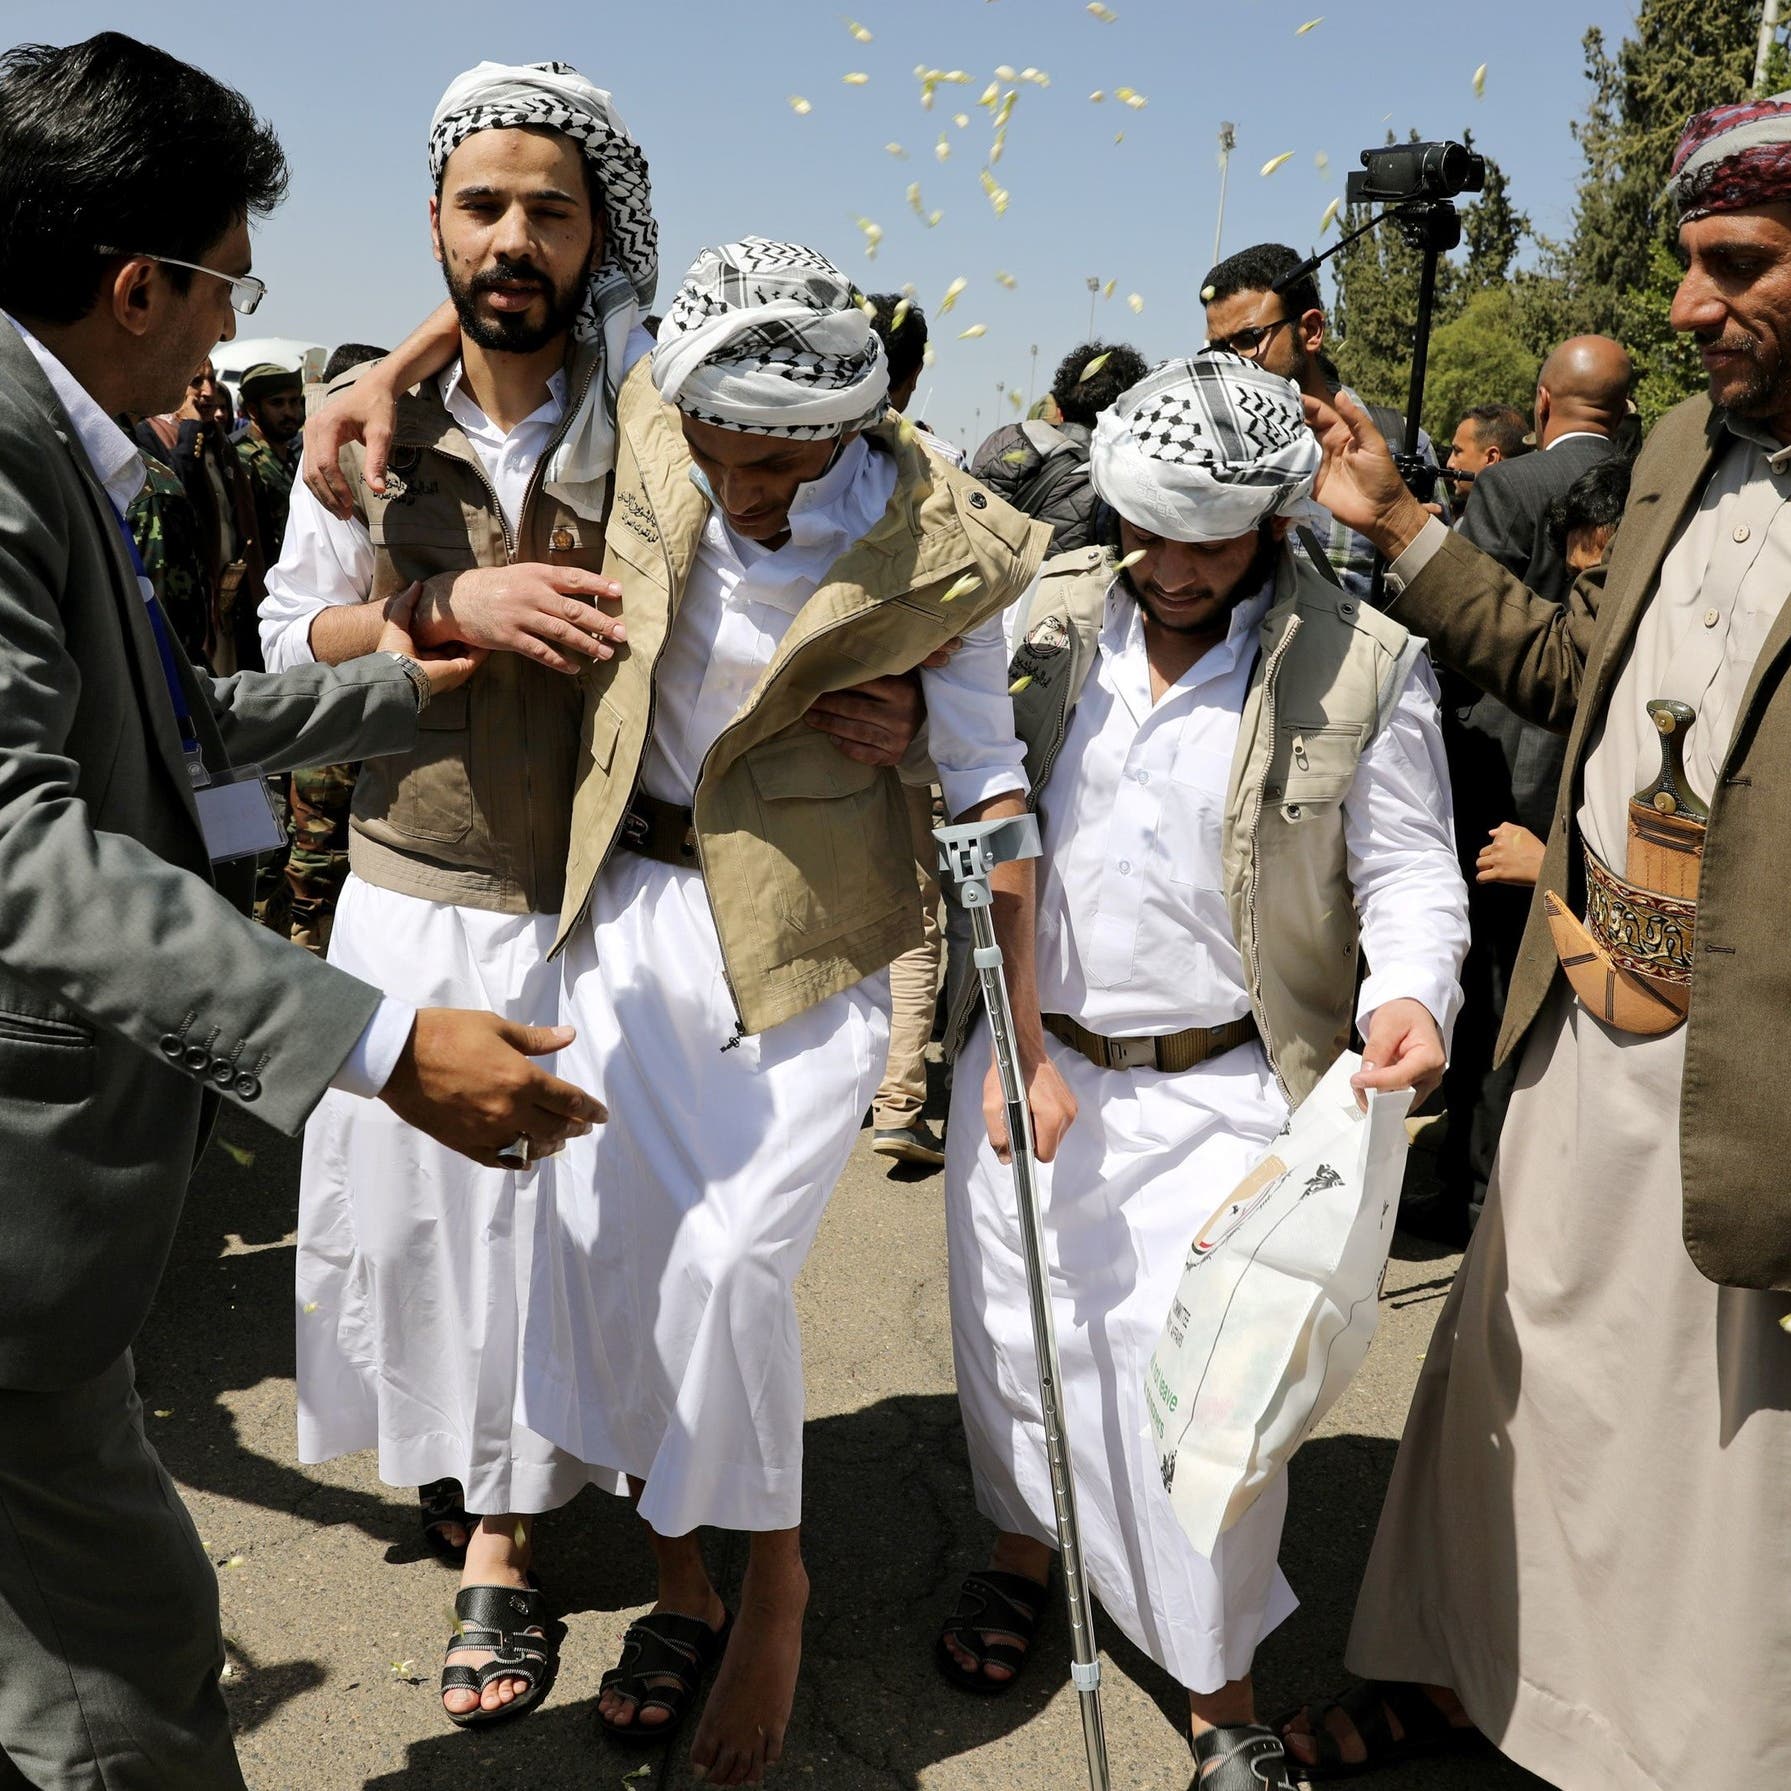 حكومة اليمن: جاهزون لإنجاز صفقة تبادل أسرى مع الحوثيين